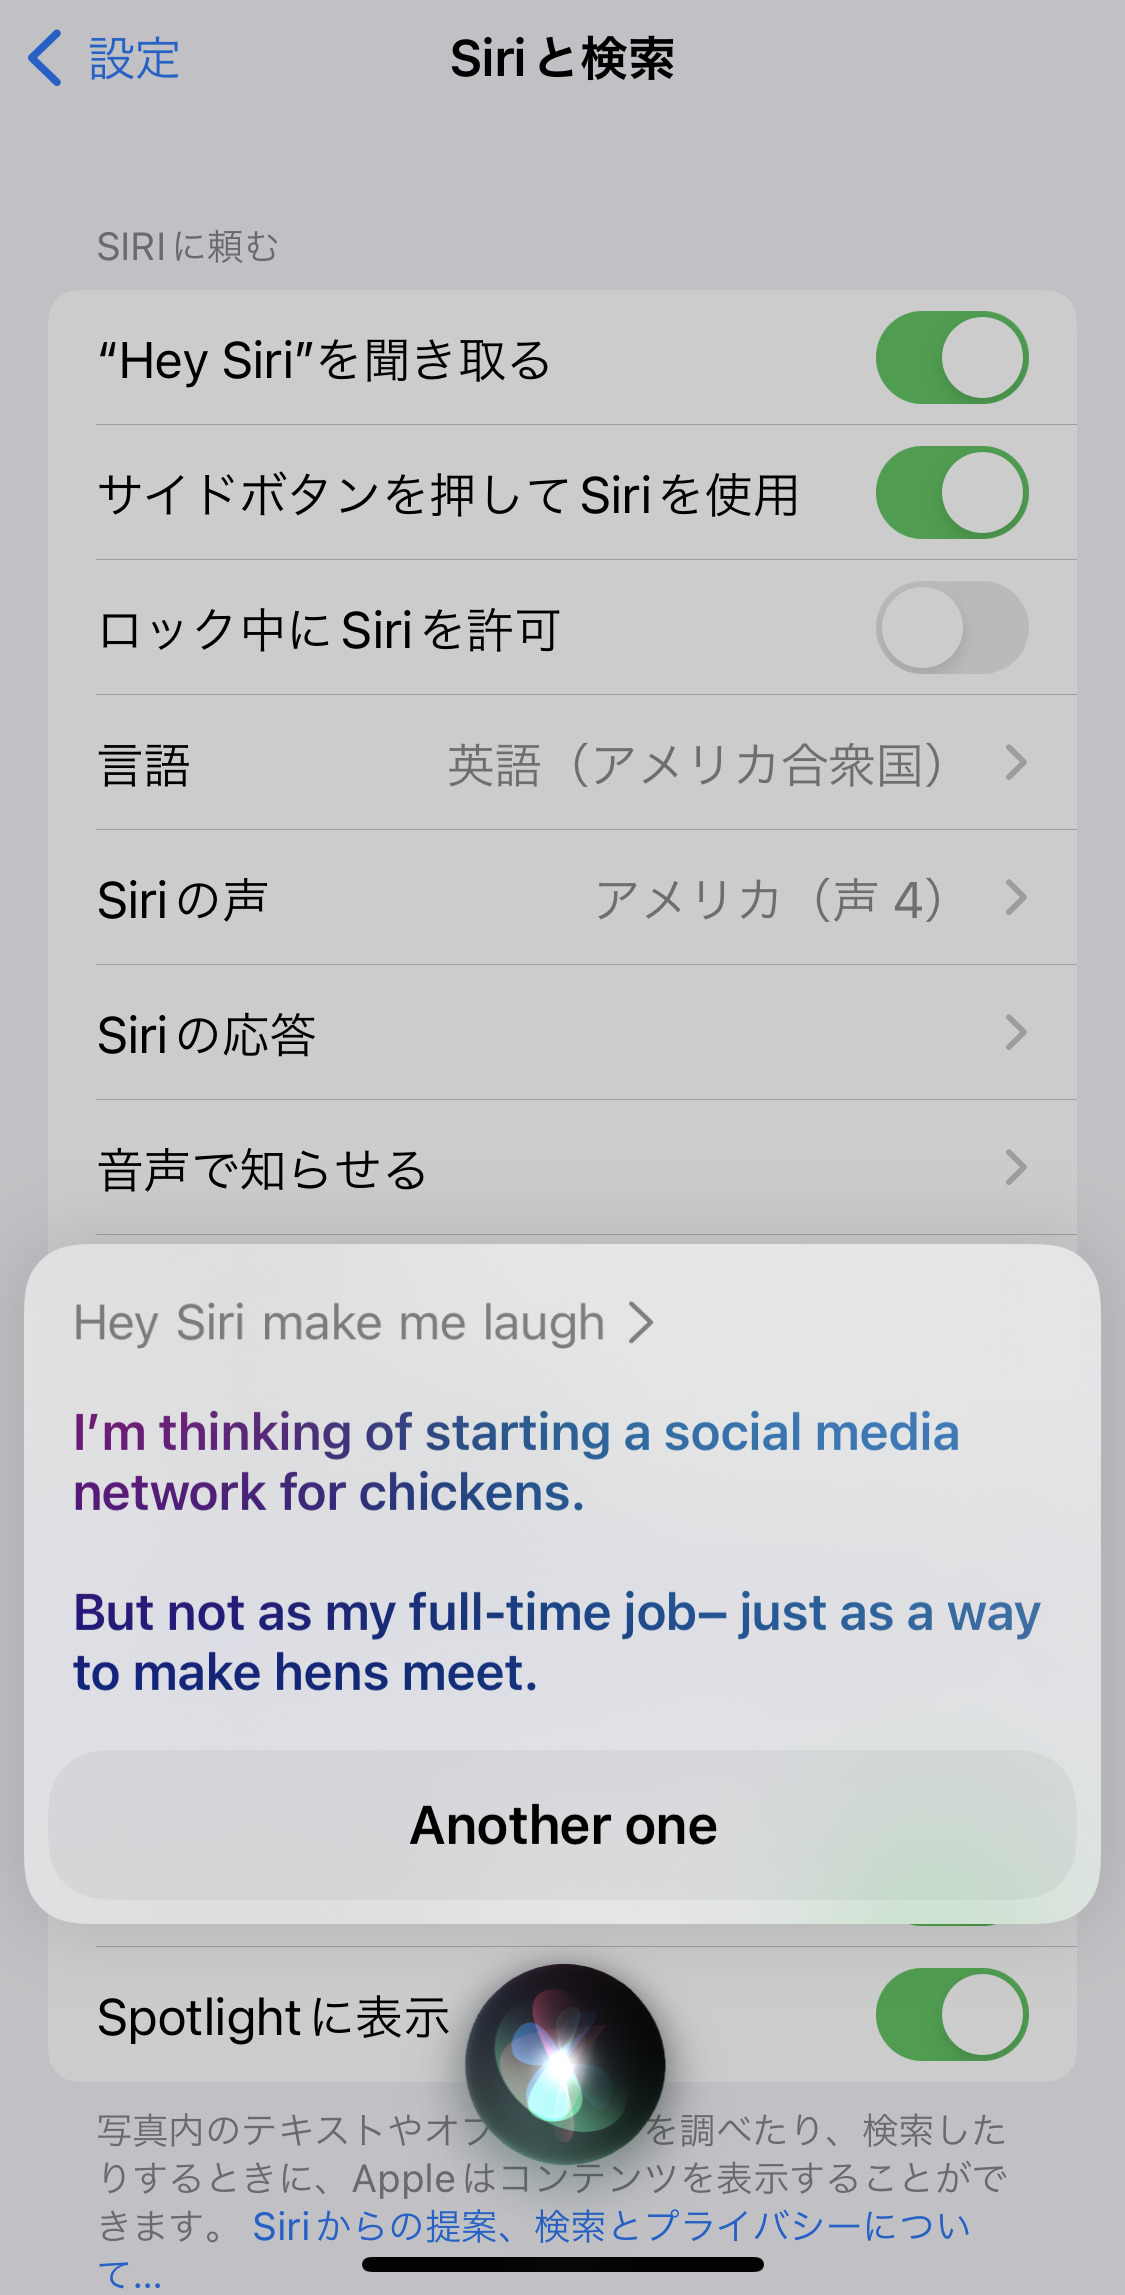 Siriの設定画面と会話内容